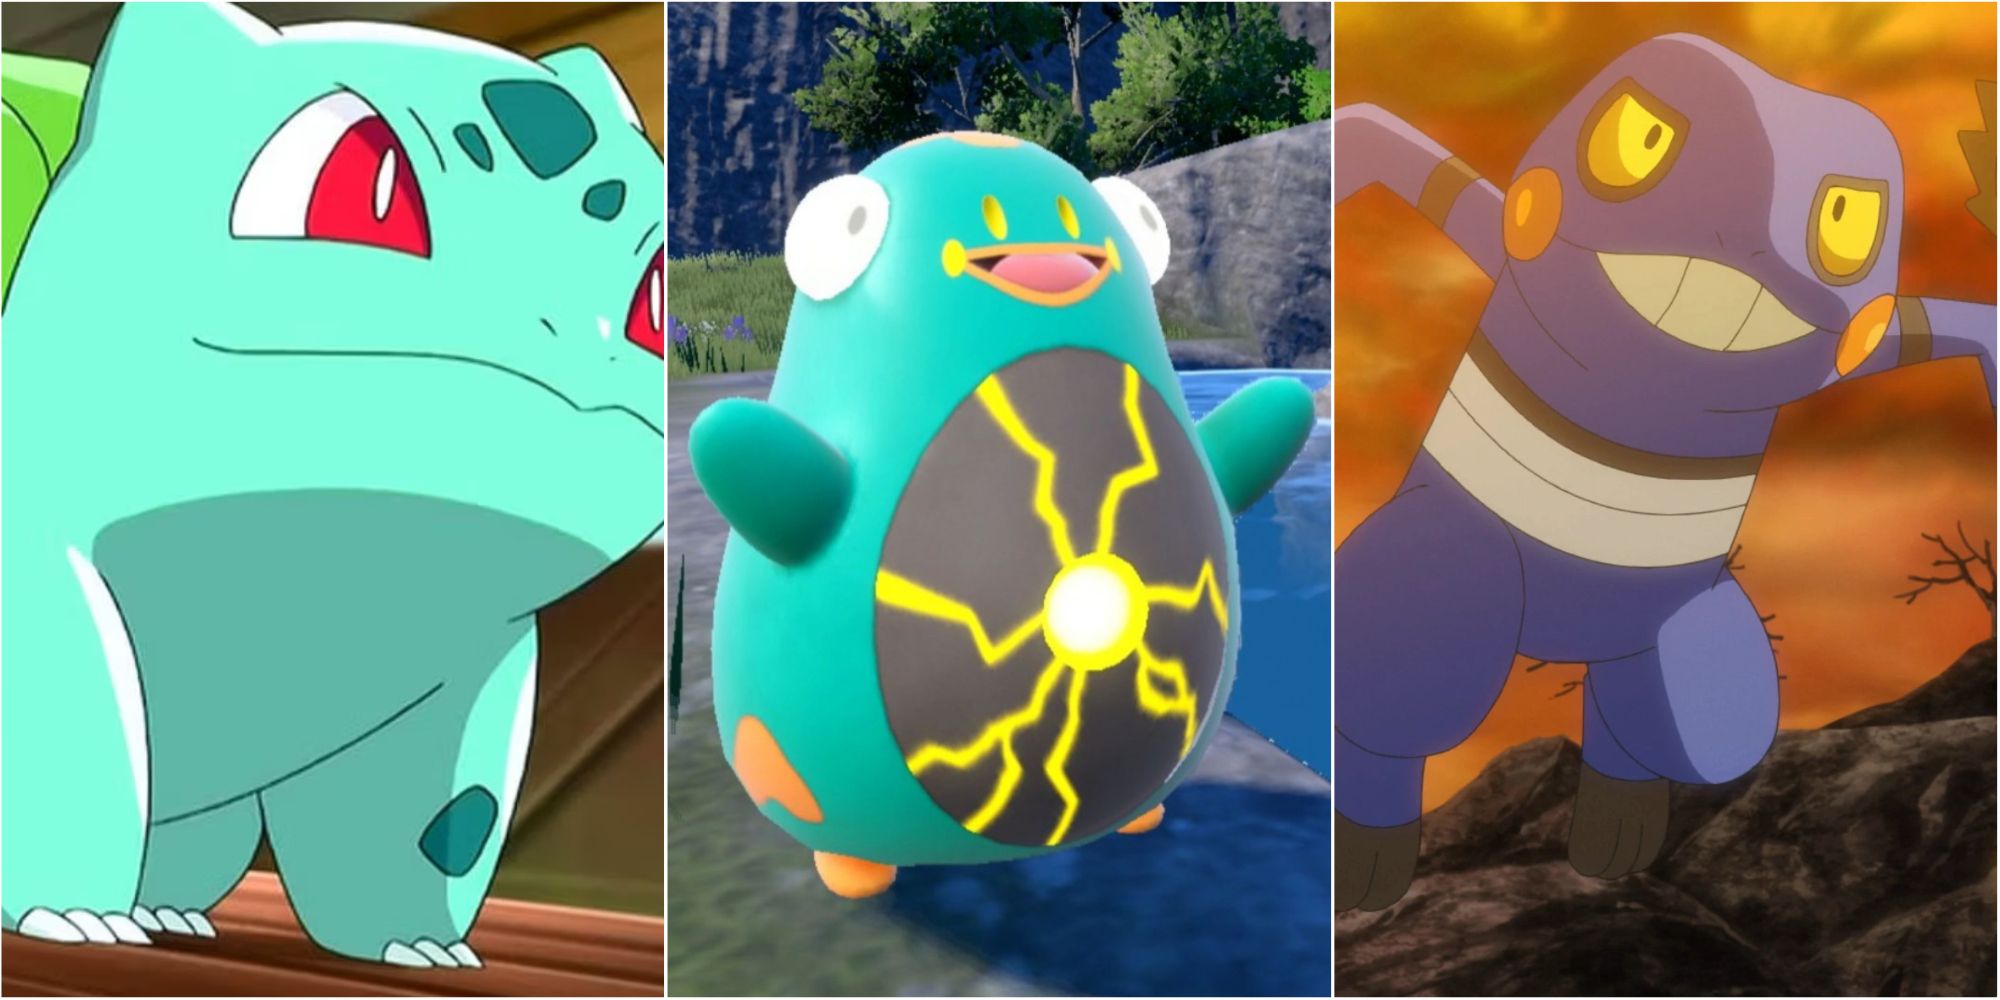 Pokemomania - Munfrog : O pokémon sapo Type